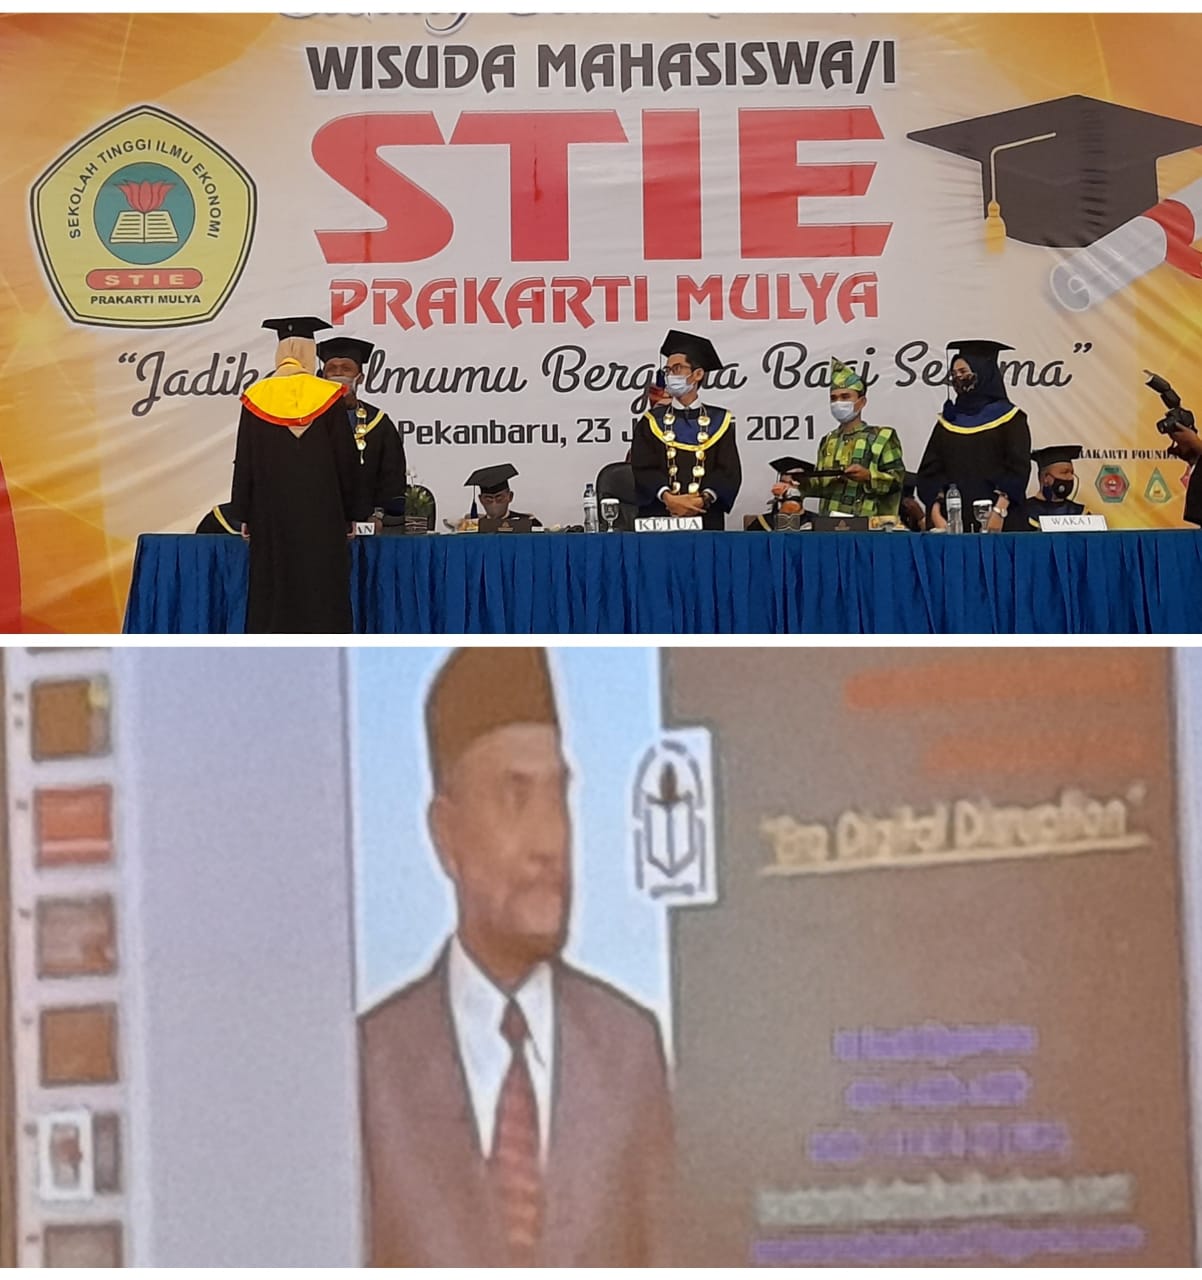 Ketua APTISI Pusat Prof Budi Djatmiko Hadiri Wisuda STIE Prakarti Mulya. Ini Pesan dan Harapanya.